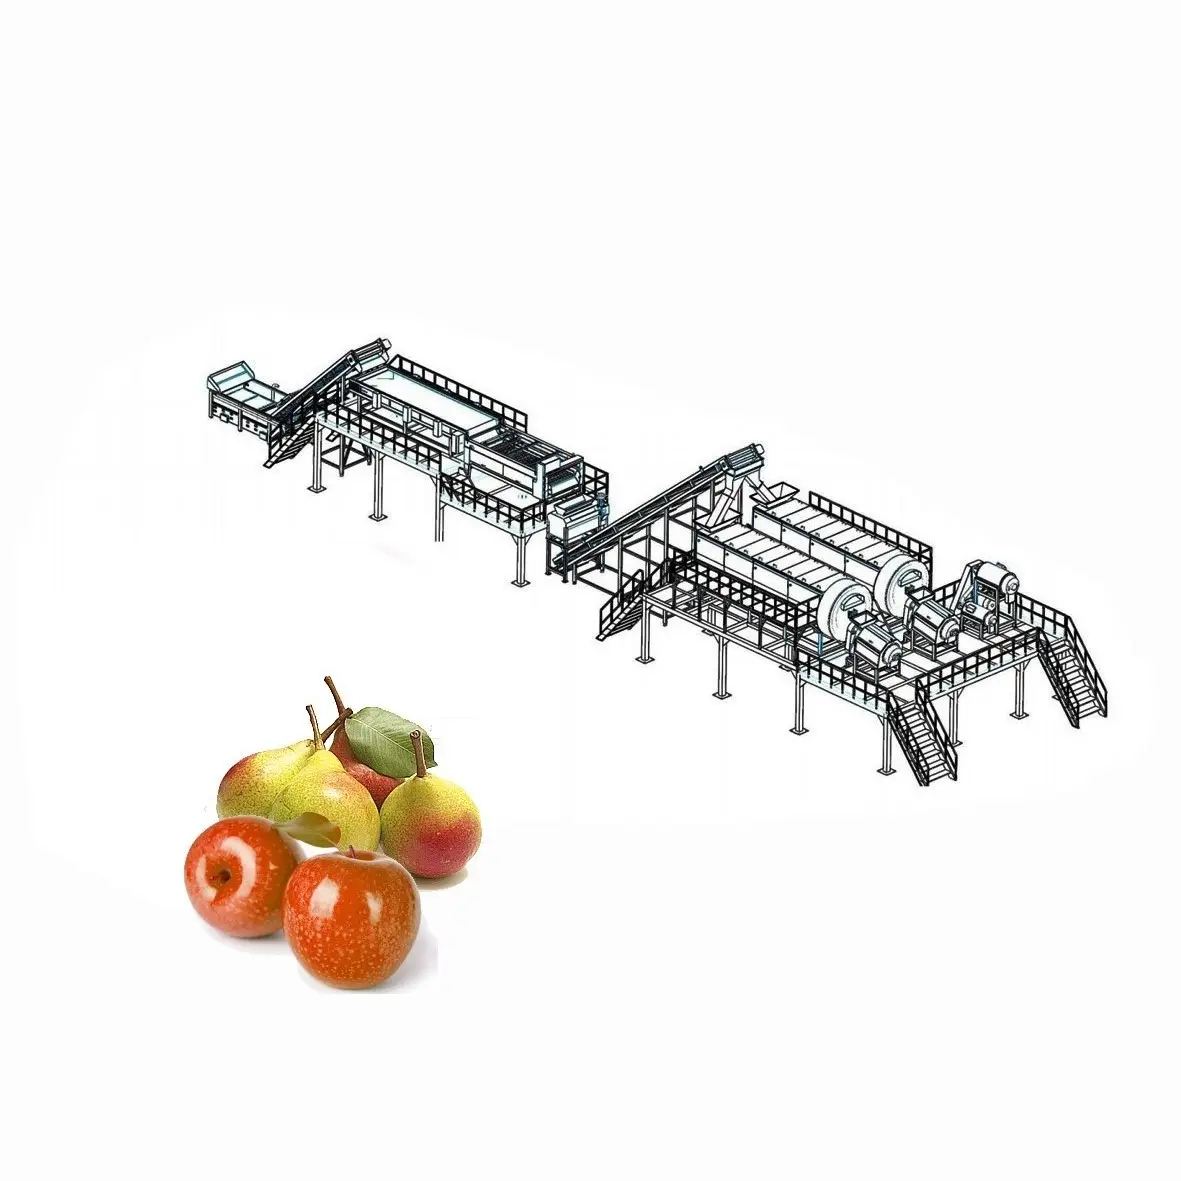 सेब का रस प्रसंस्करण लाइन सेब रस बनाने वाली मशीन के साथ सेब रस बनाने की मशीन